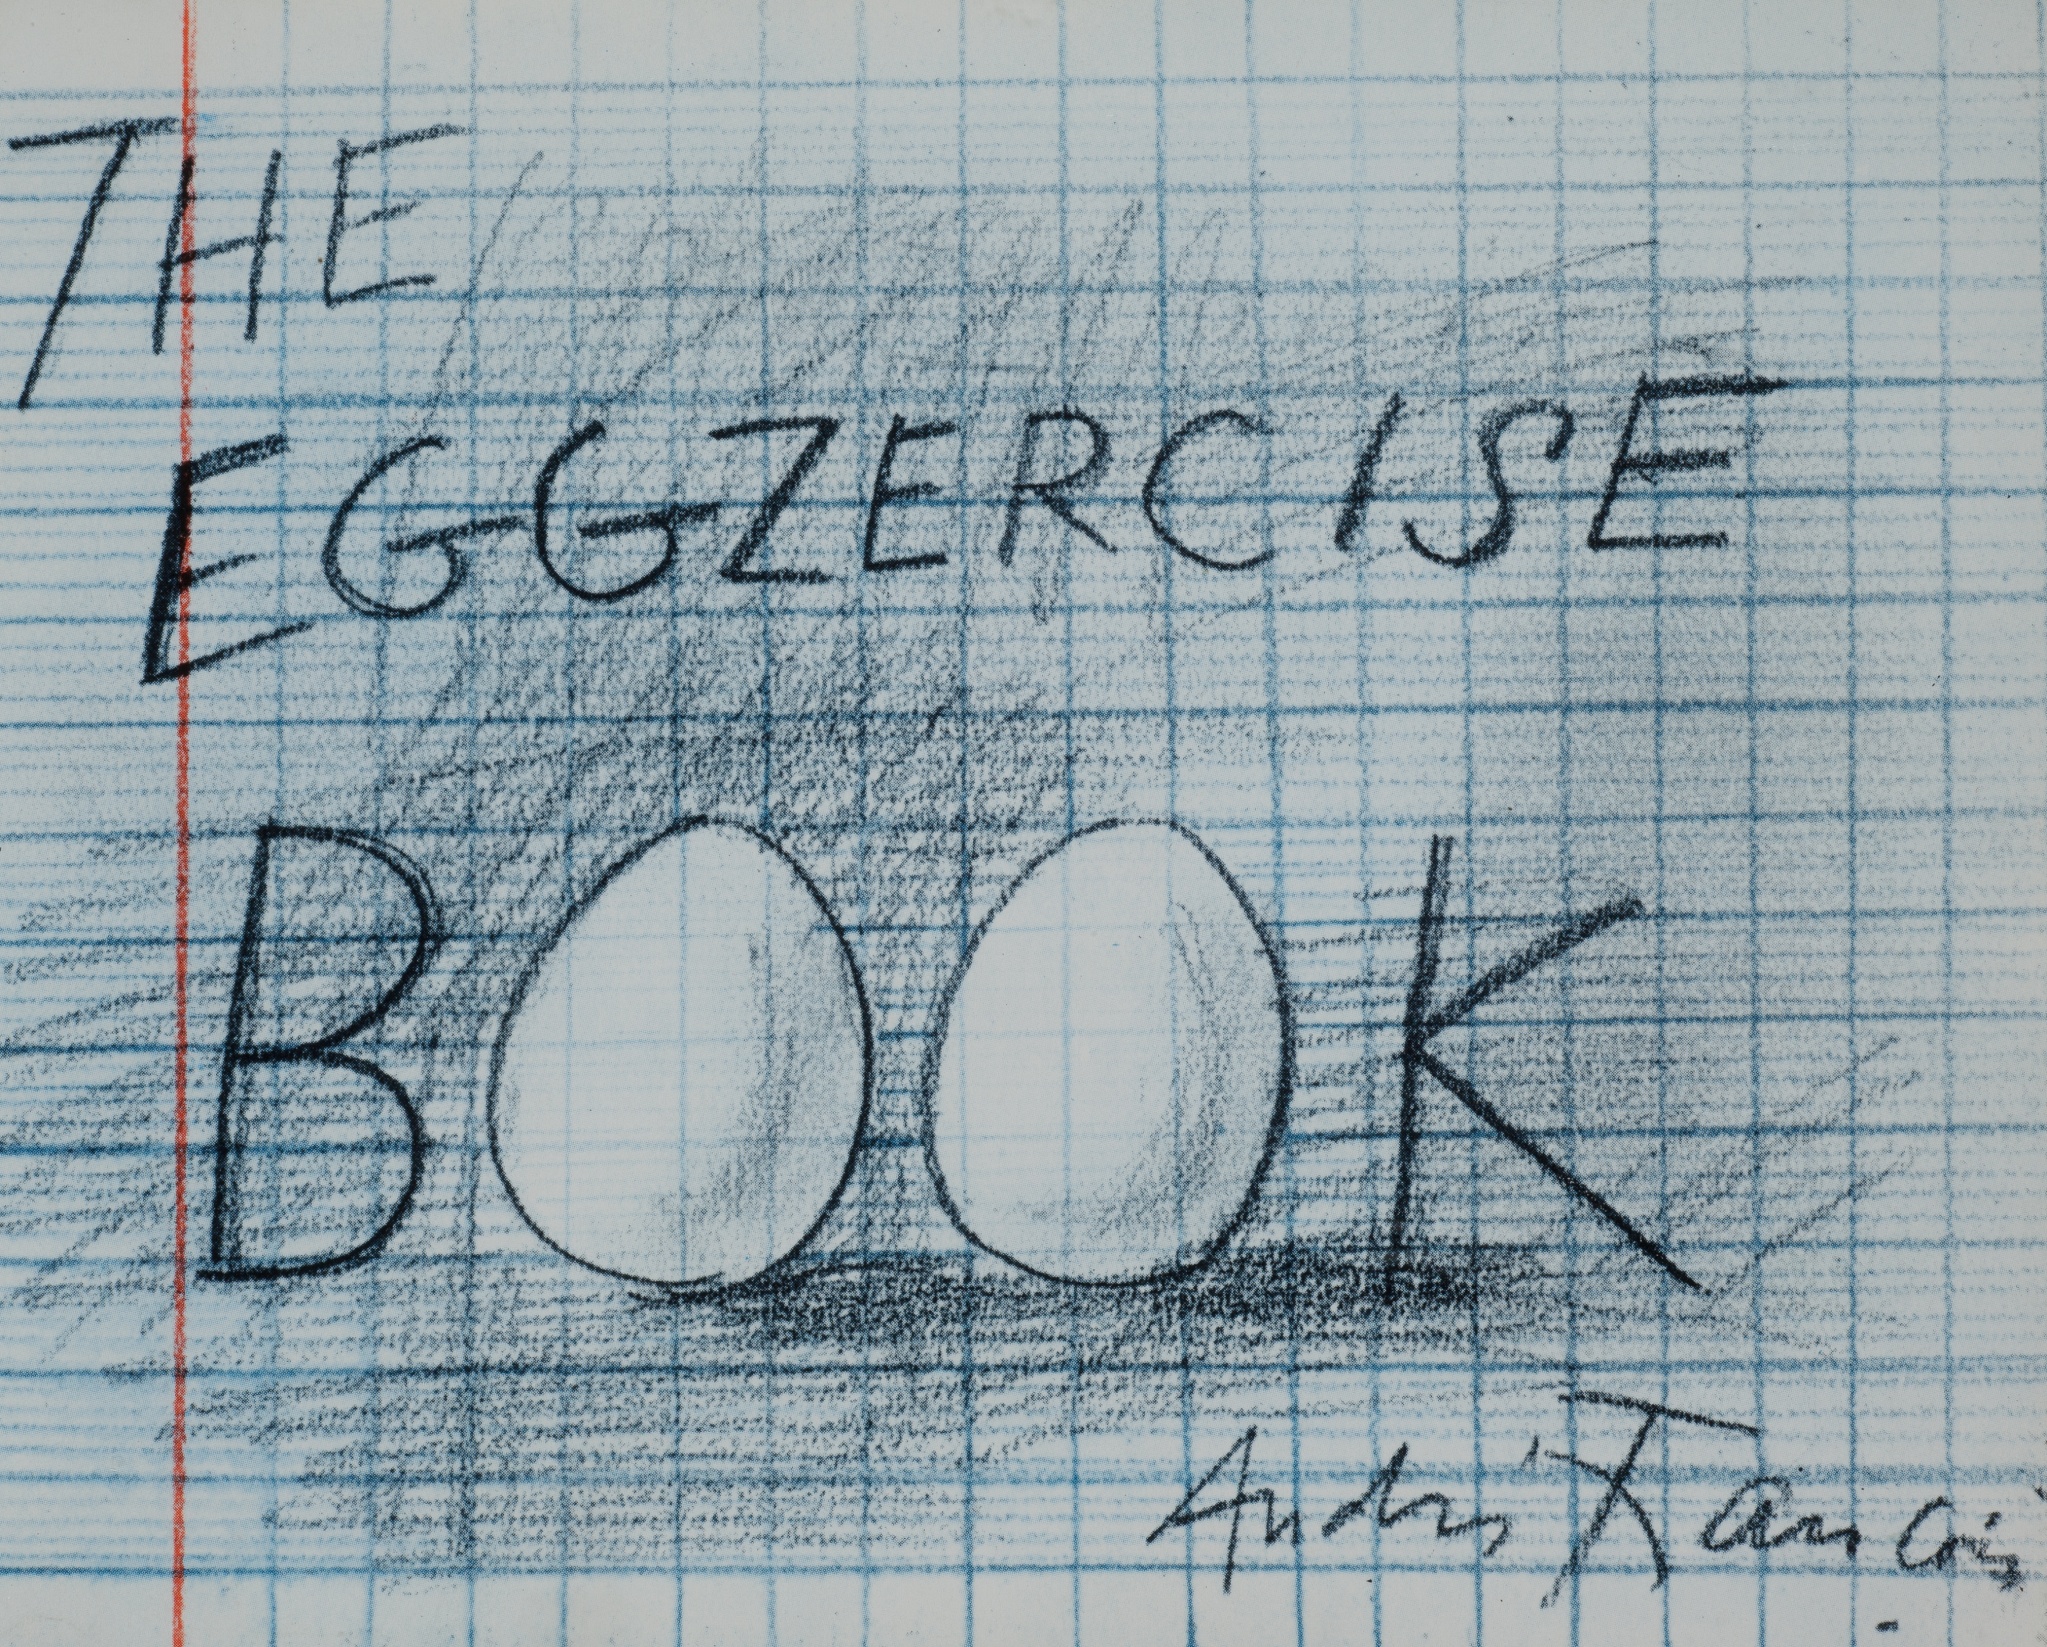 The eggsercize book